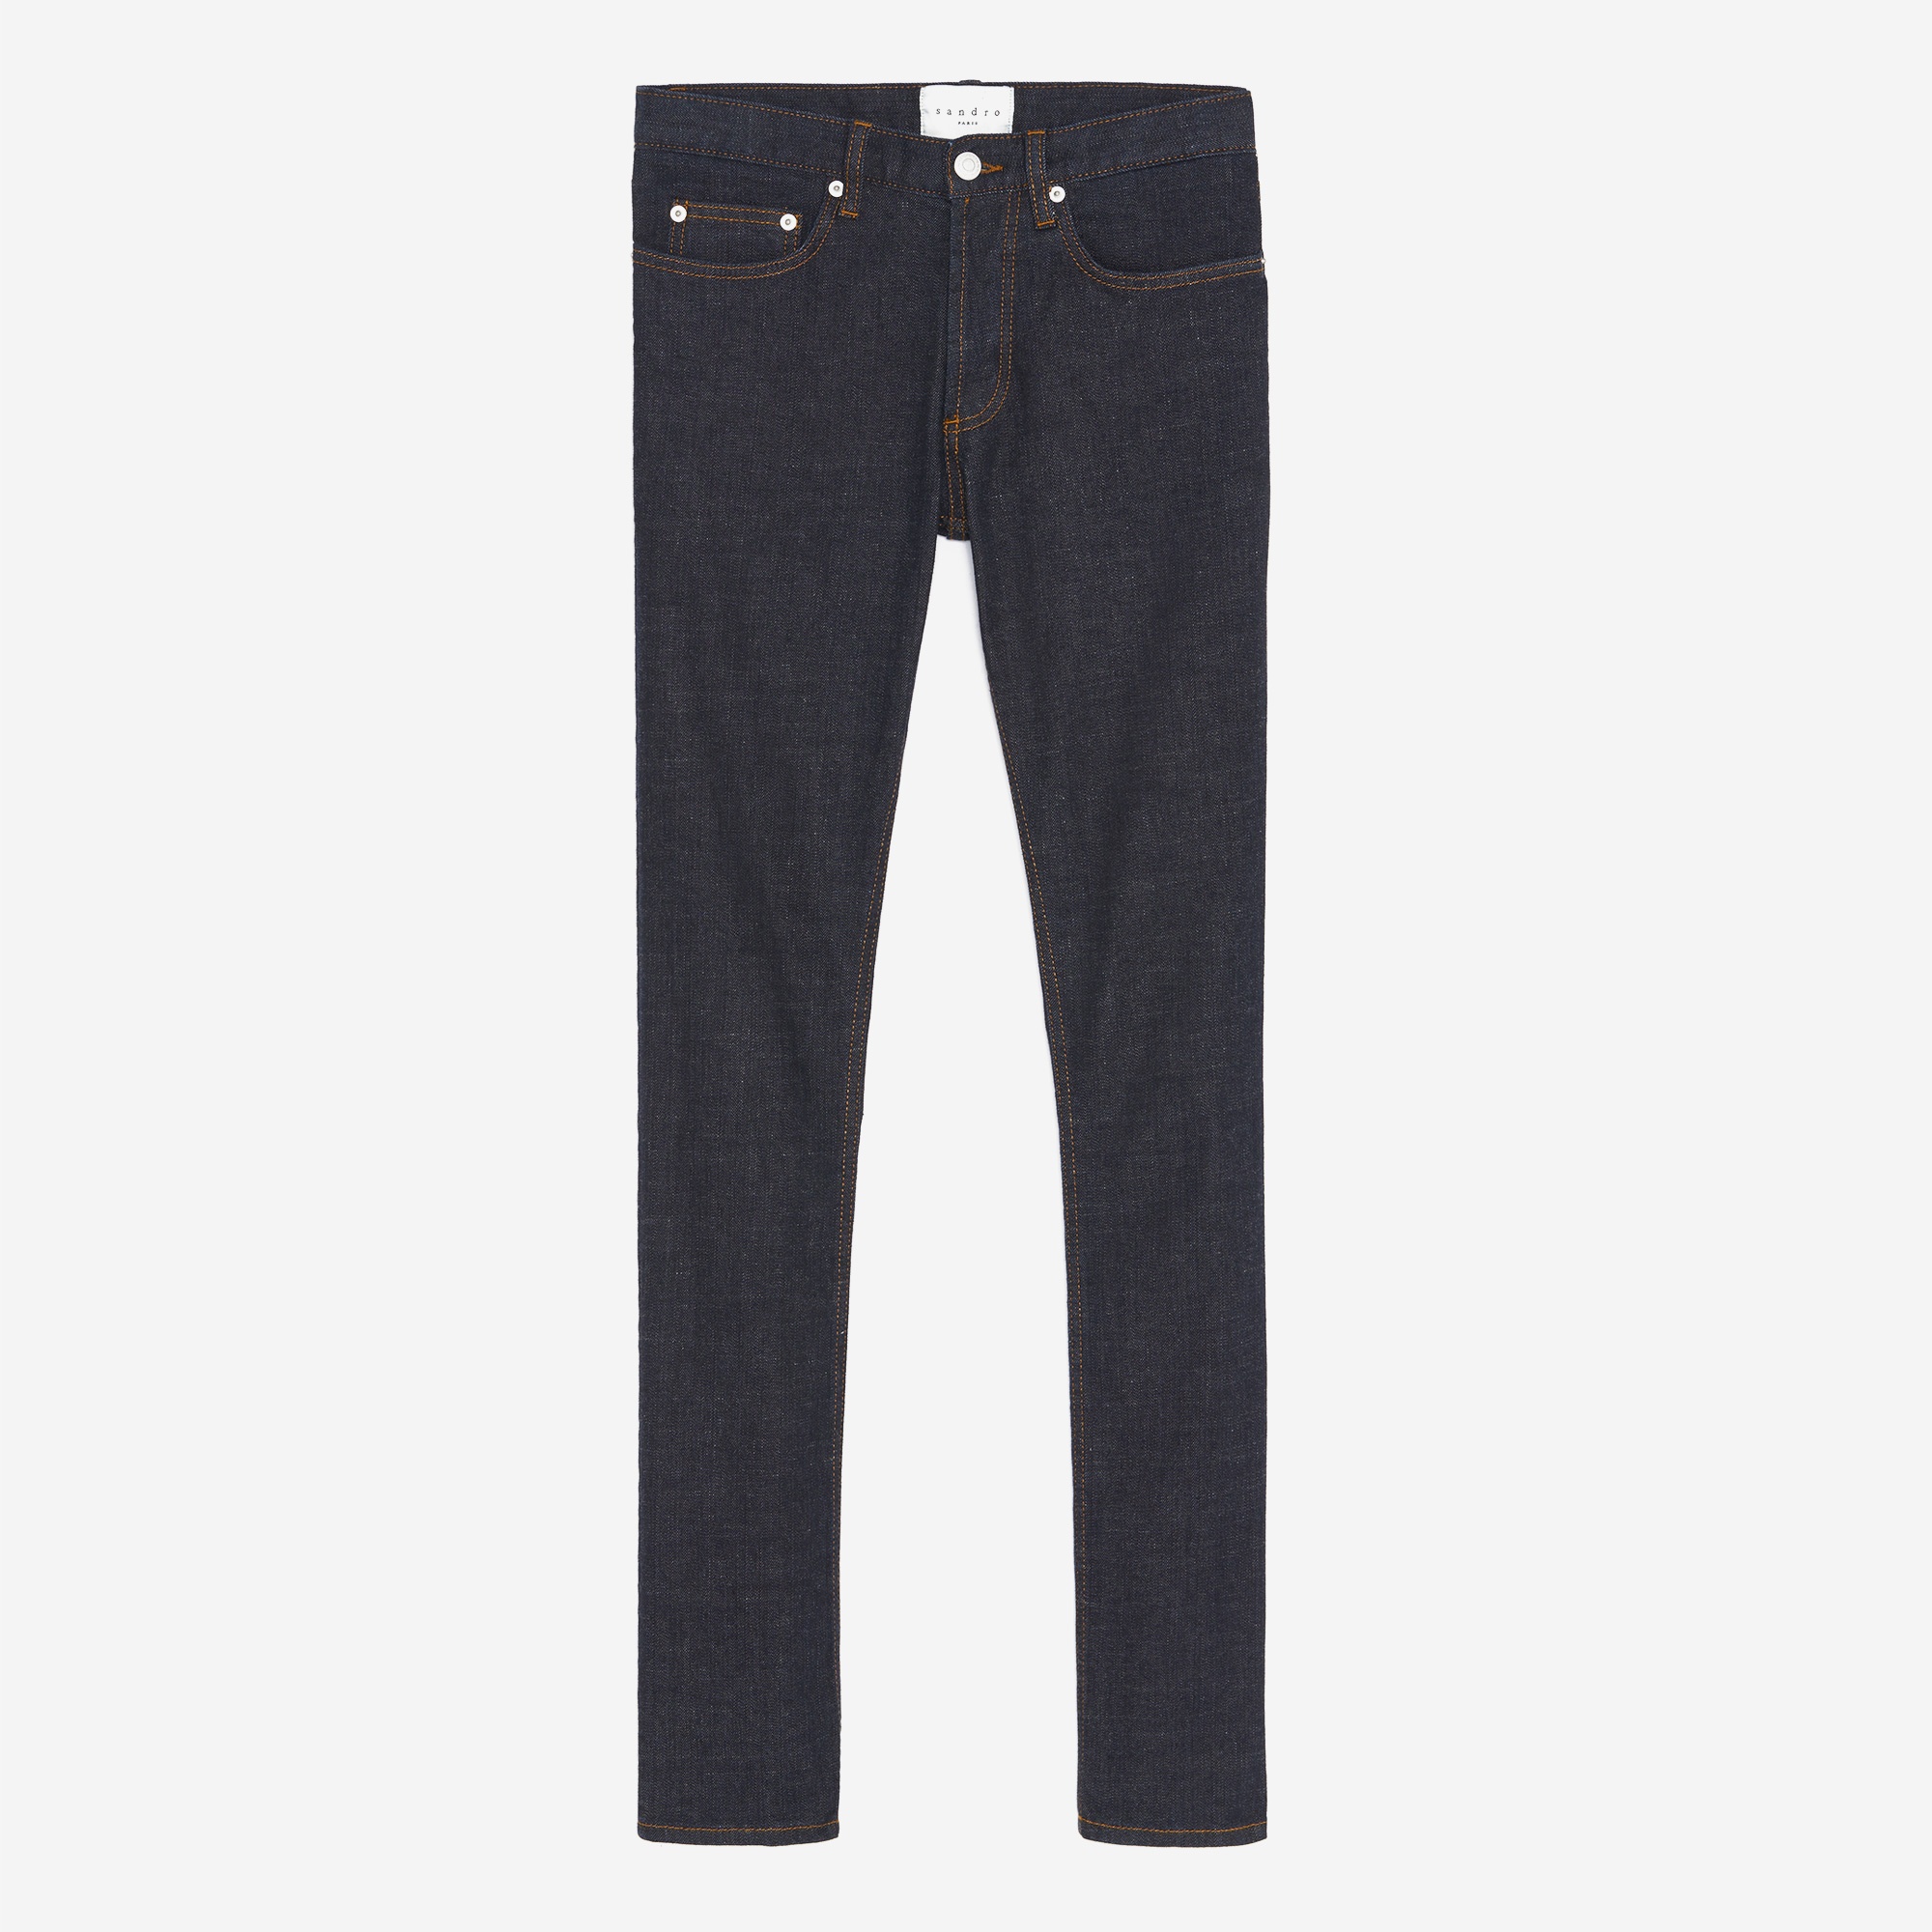 Raw jeans - Narrow cut - 1